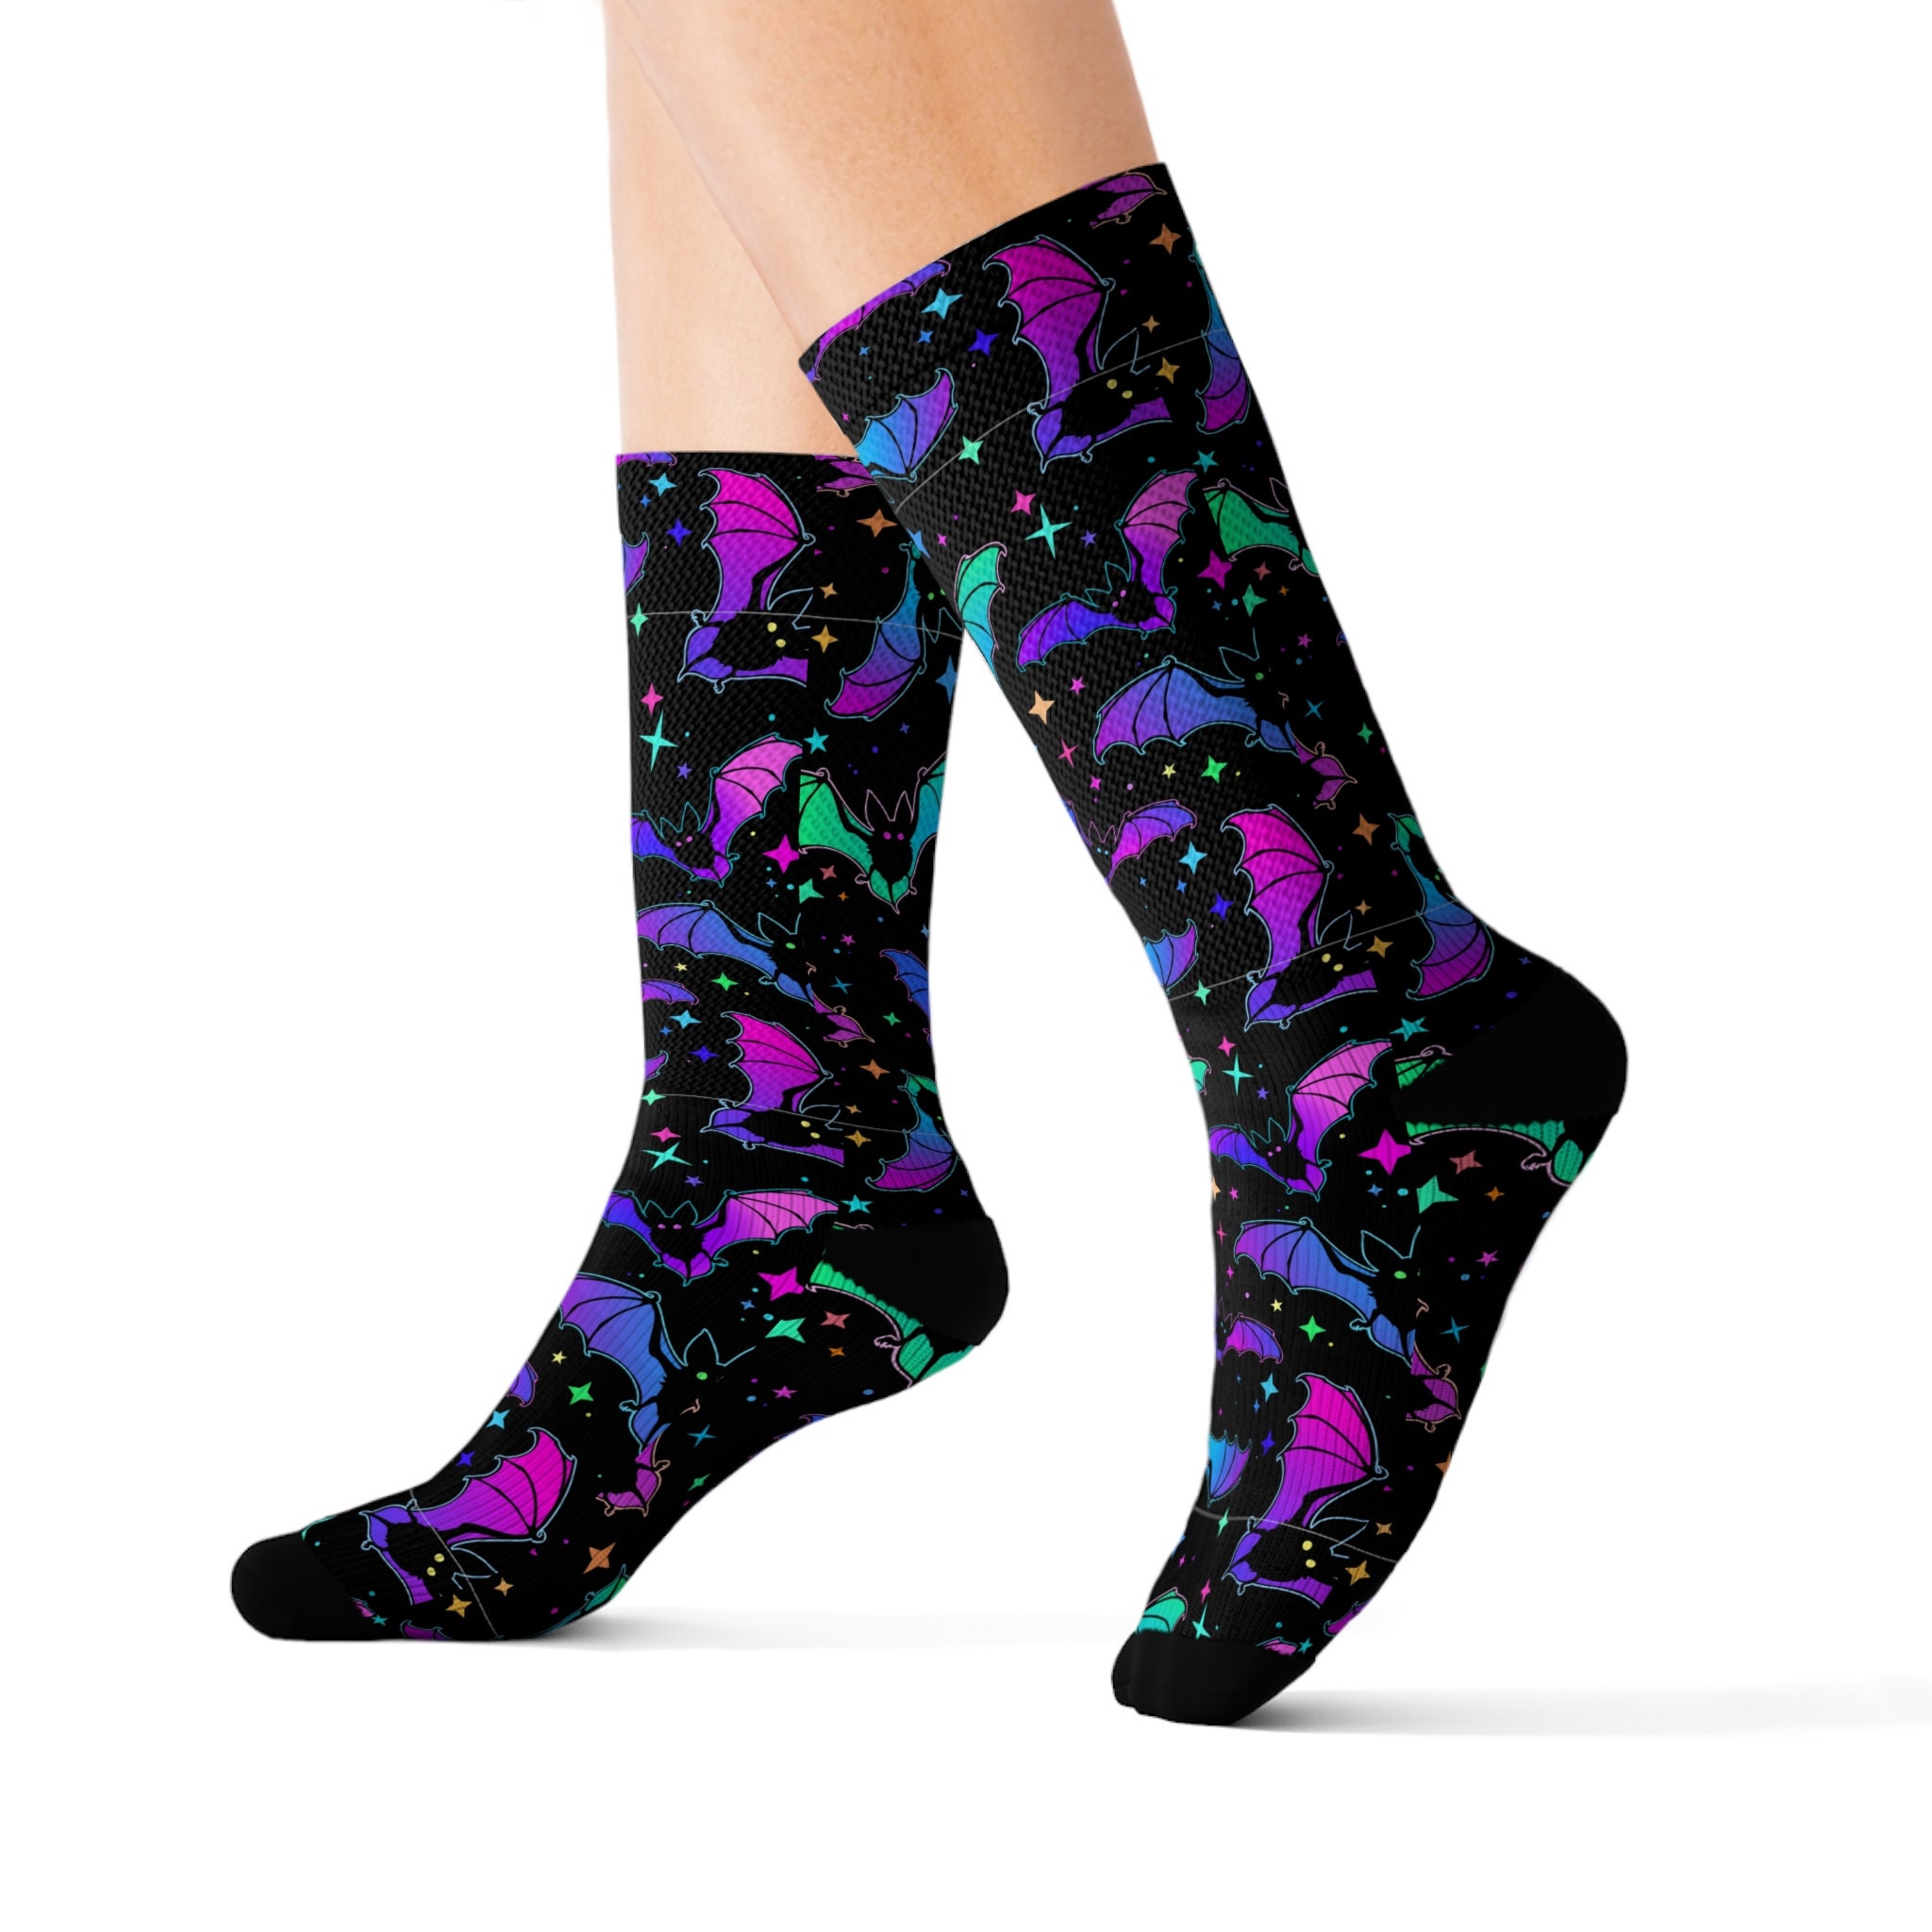 Planet Star Socks Cute Pink Socks Funny Socks for Women Novelty Socks Funky